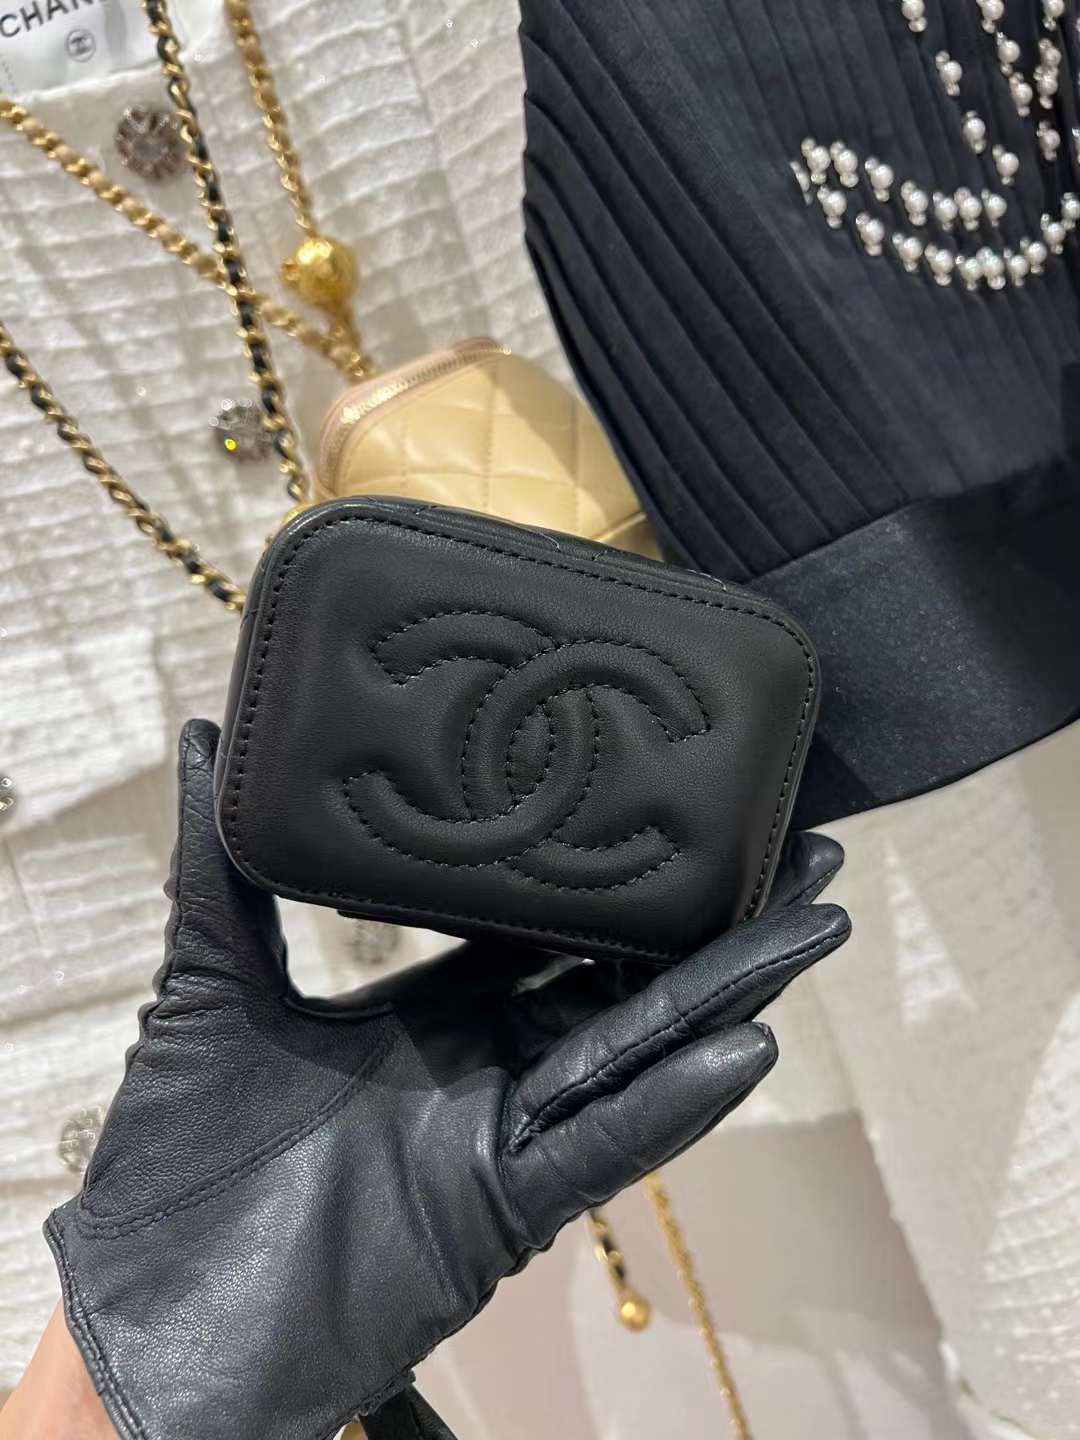 【P1020】香奈儿包包批发 Chanel多色羊皮升级版金球链条斜挎盒子包